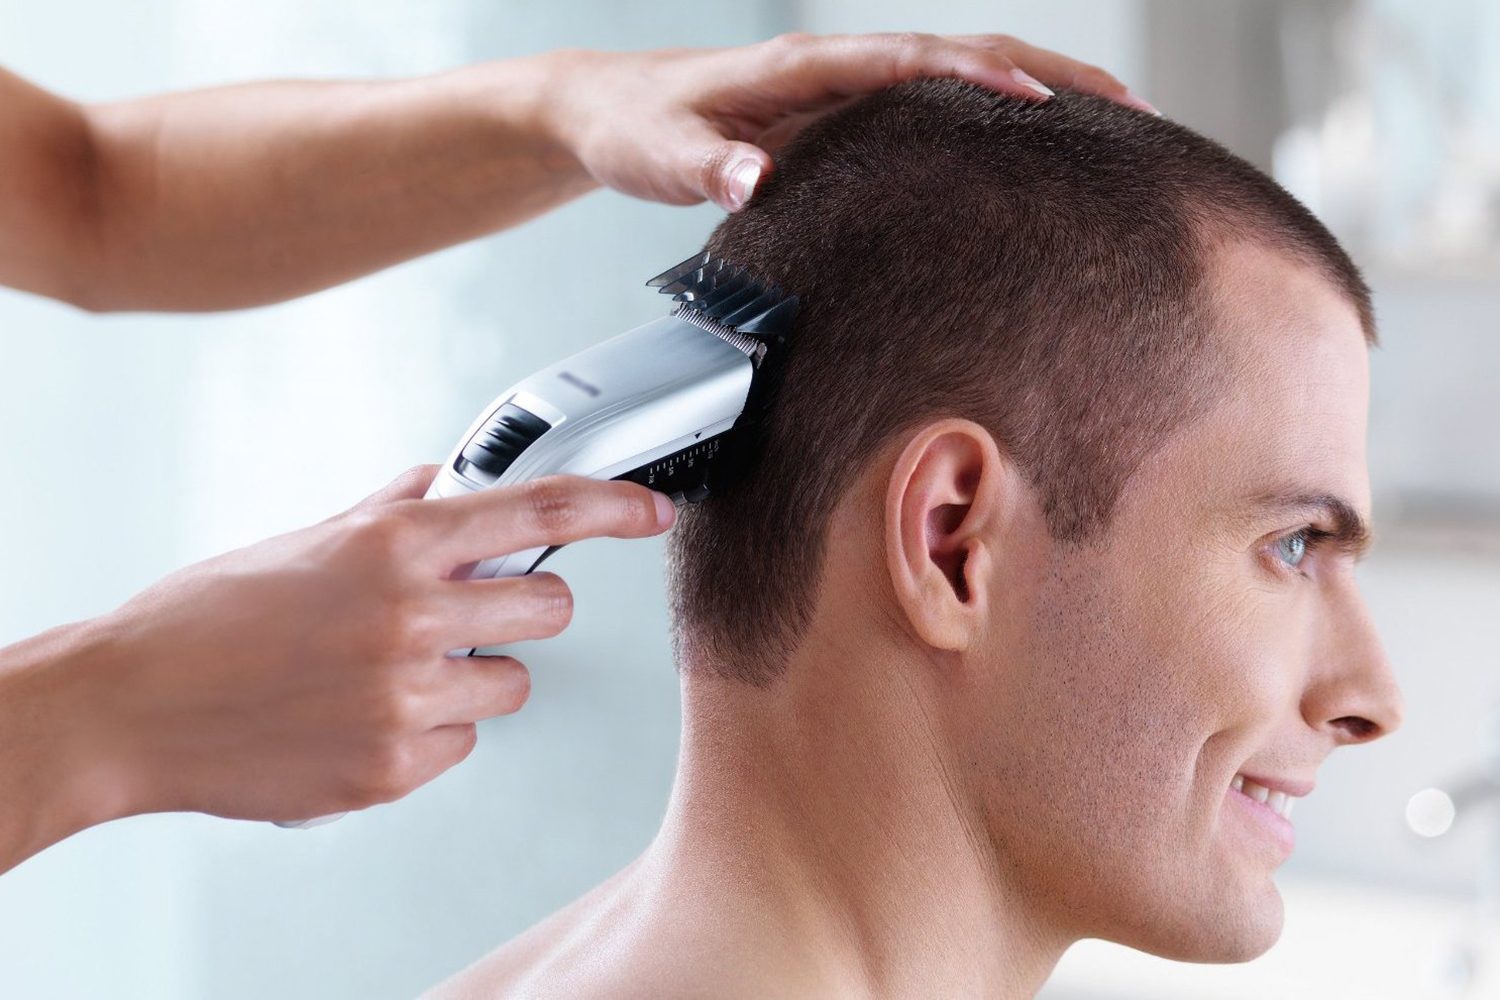 Hãy tự tin chăm sóc mái tóc của mình và trải nghiệm cảm giác tự cắt tóc bằng tông đơ. Để giúp bạn thực hiện điều đó, hình ảnh này sẽ cho bạn thấy các bước cơ bản và kỹ năng cần thiết để tự tay cắt tóc cho mình một kiểu tóc độc đáo và phong cách.